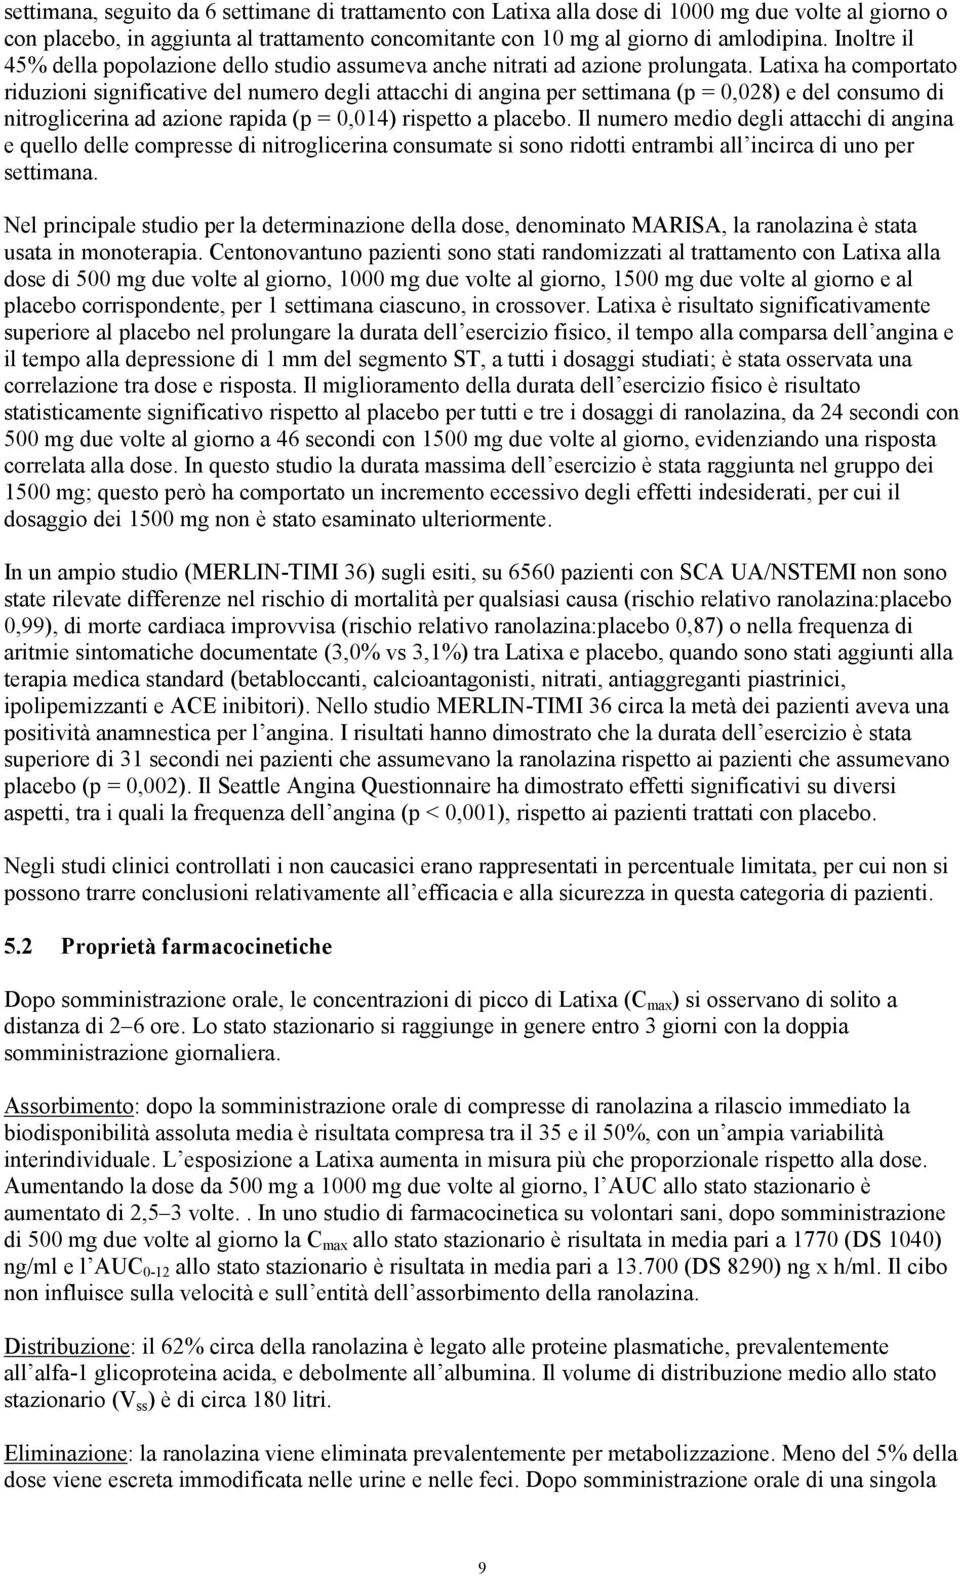 Latixa ha comportato riduzioni significative del numero degli attacchi di angina per settimana (p = 0,028) e del consumo di nitroglicerina ad azione rapida (p = 0,014) rispetto a placebo.